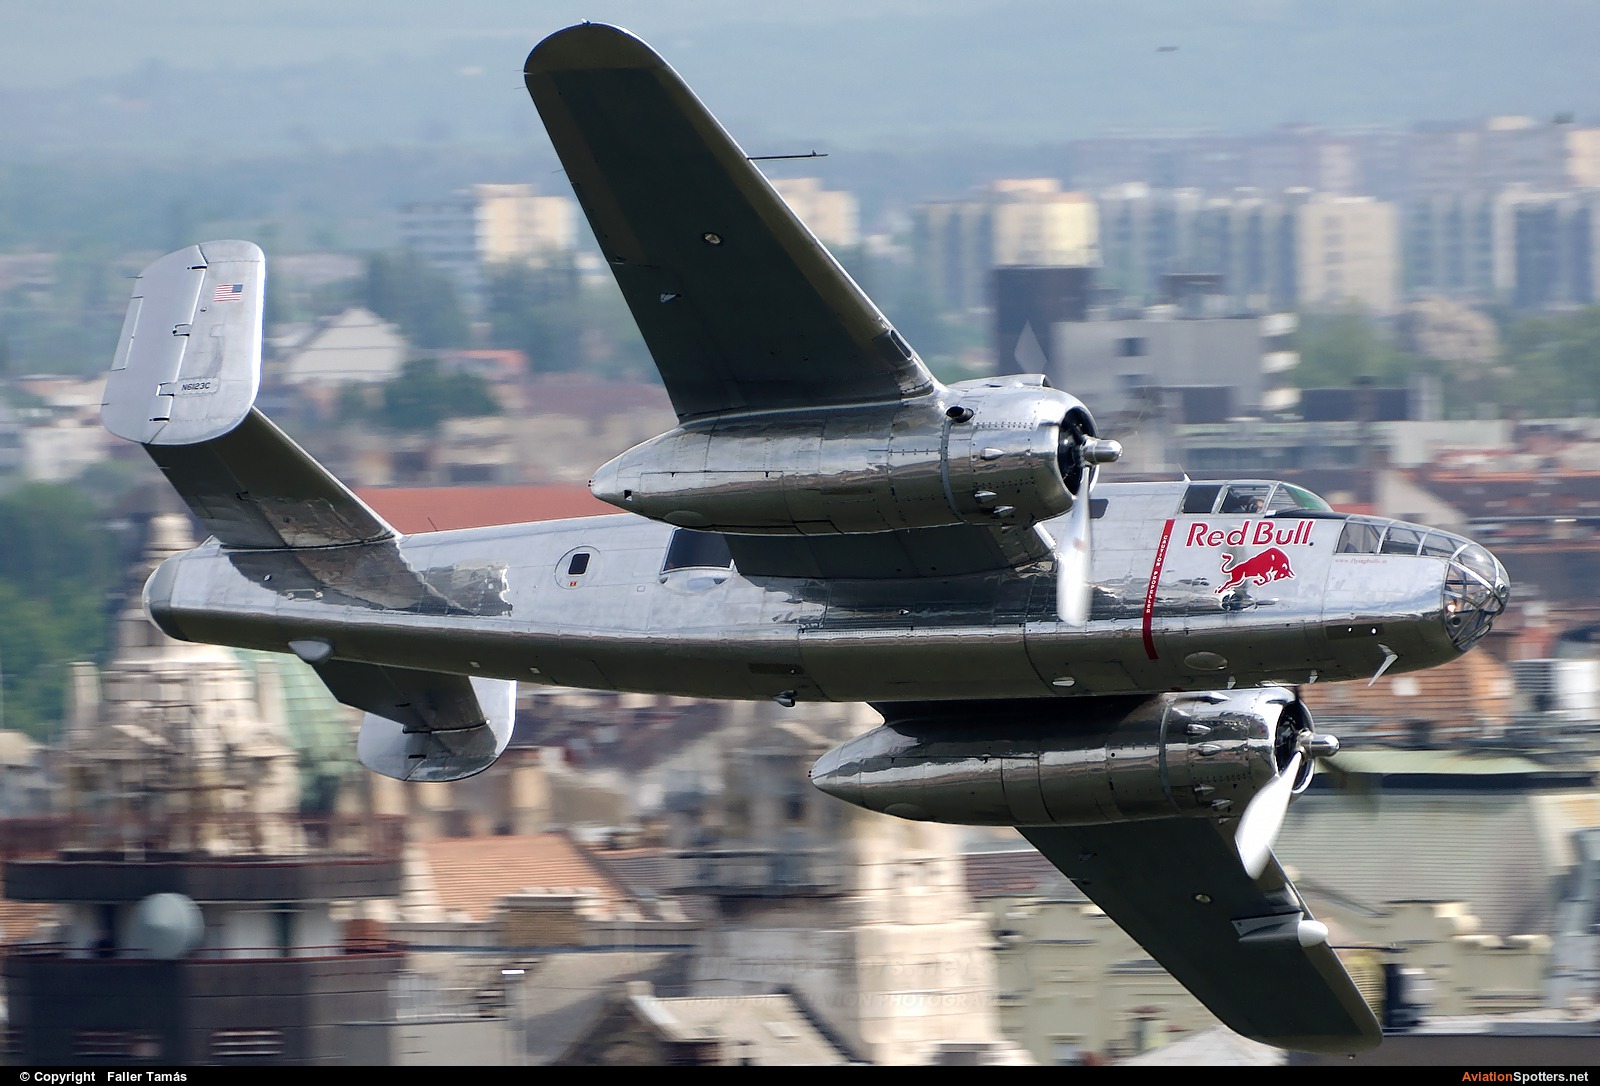 The Flying Bulls  -  B-25J Mitchell  (N6123C) By Faller Tamás (fallto78)